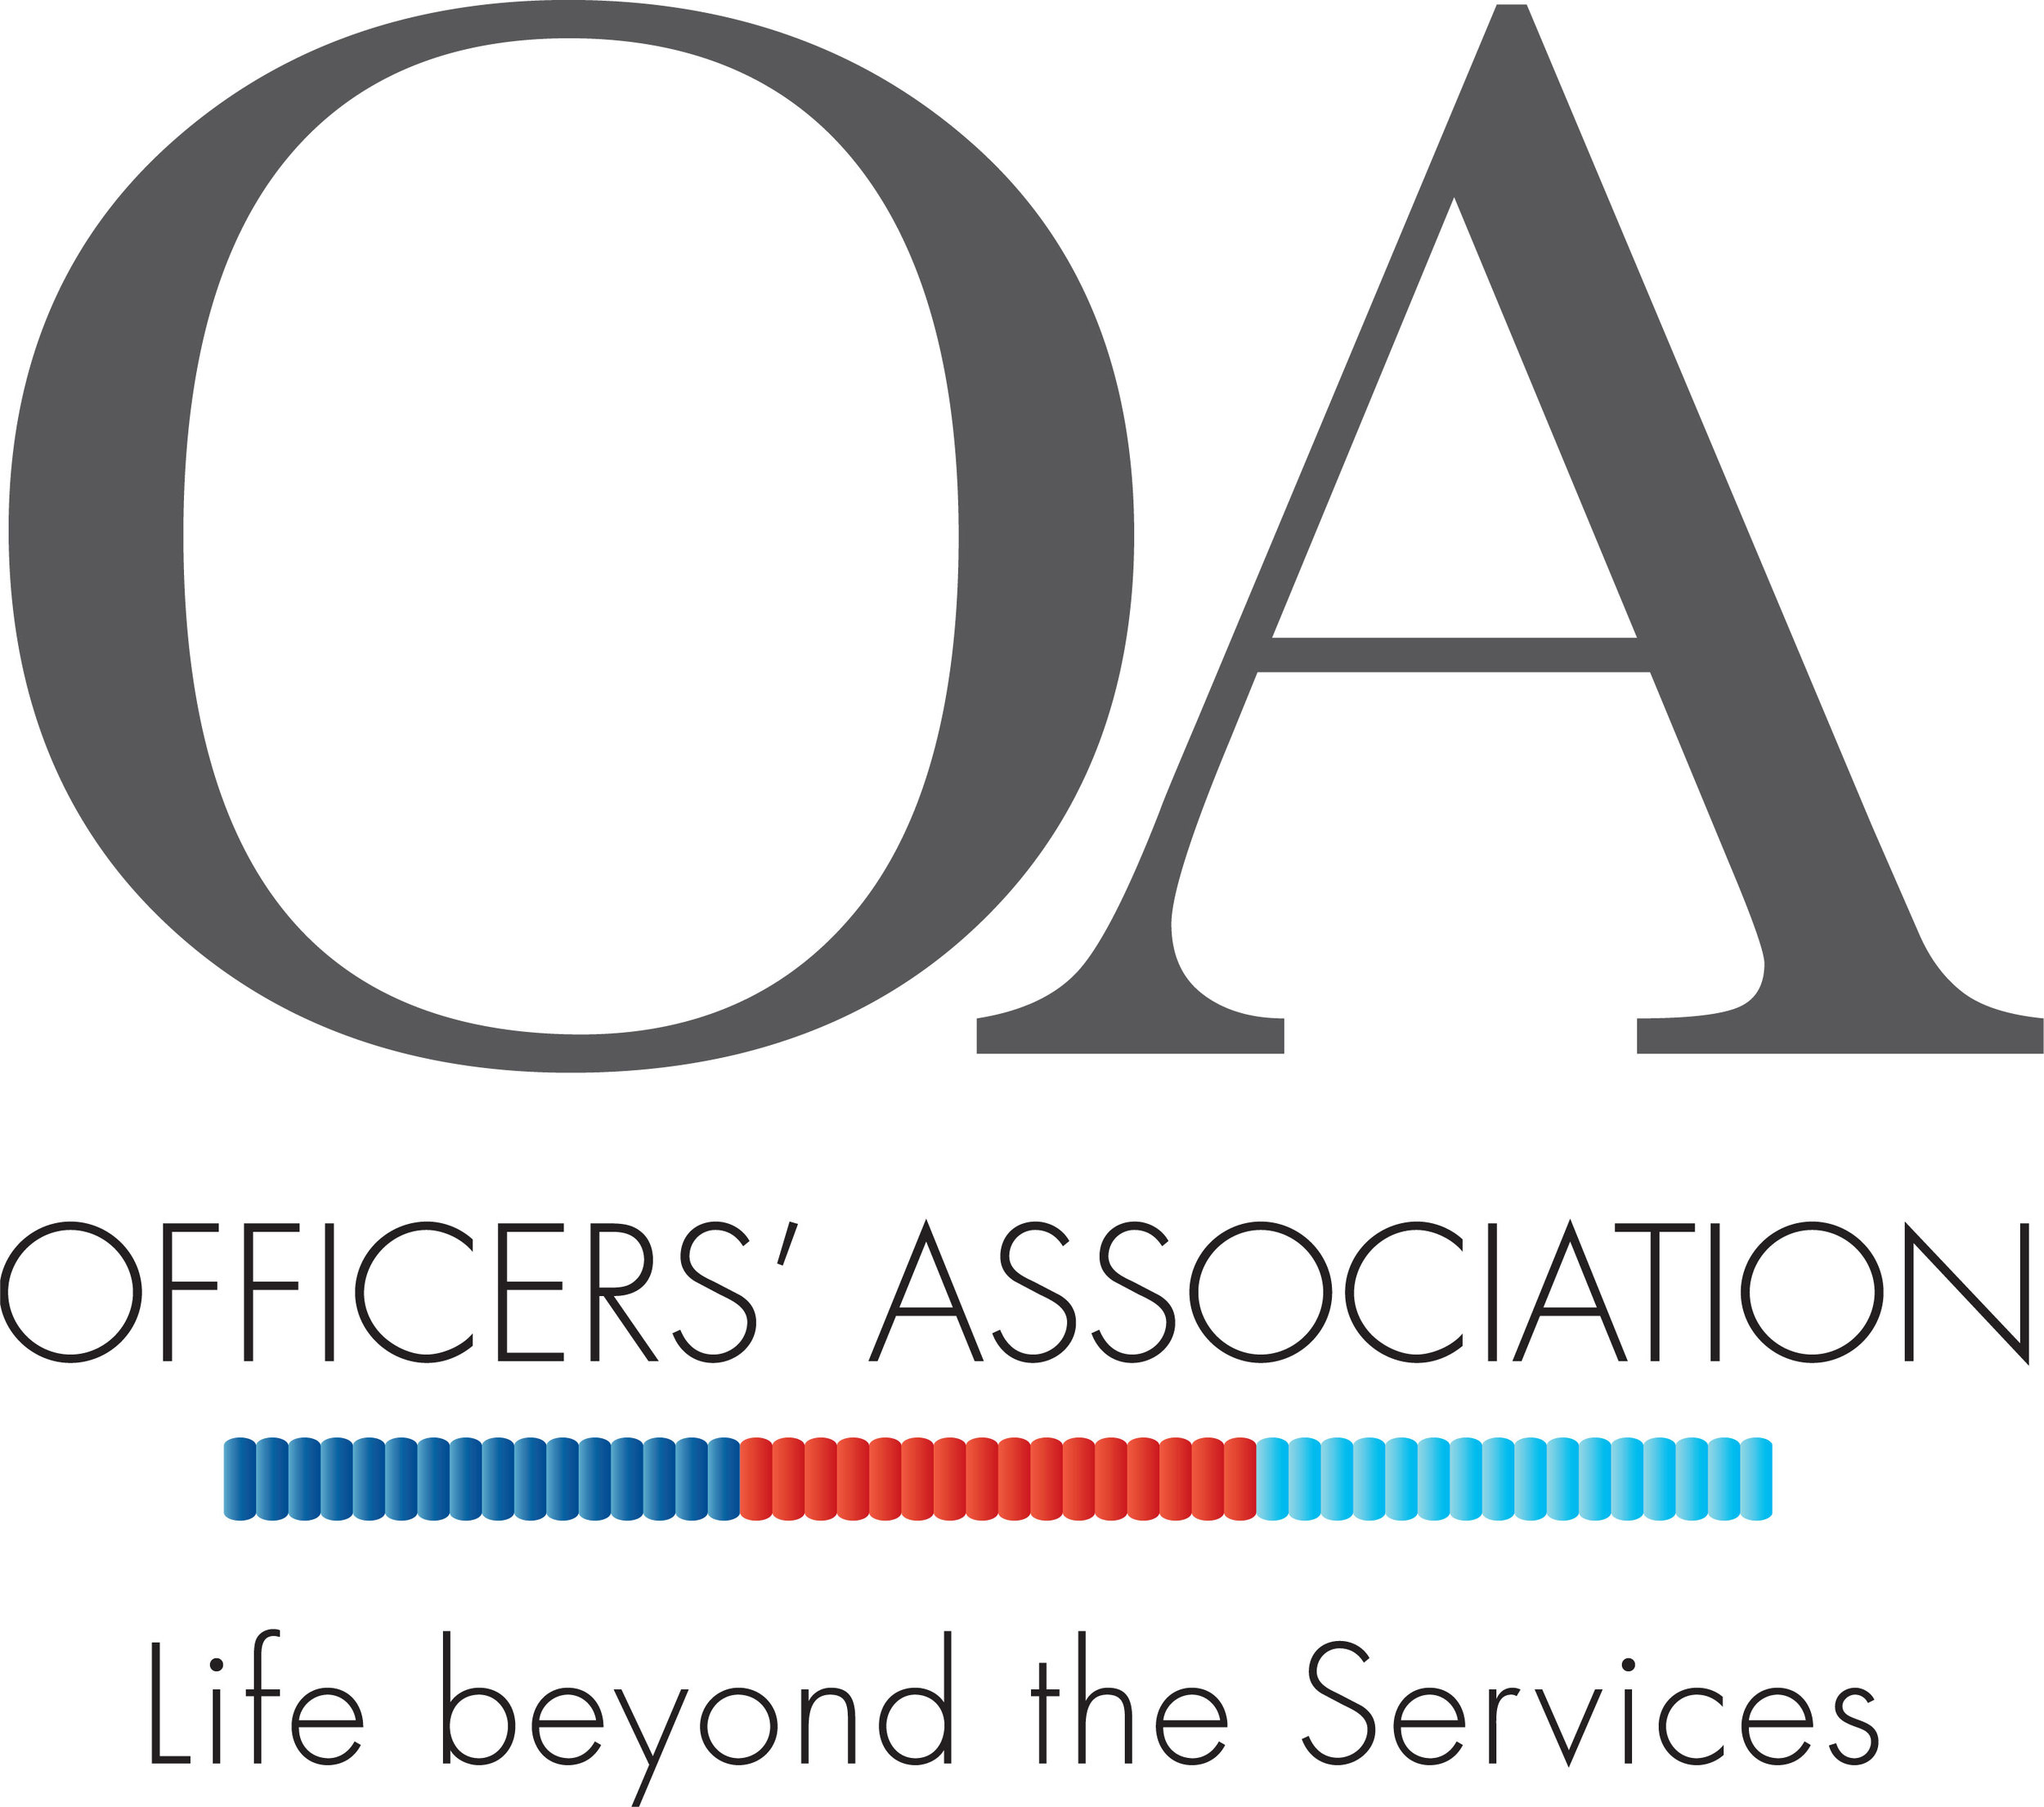 OA-logo-2014-jpeg.jpg